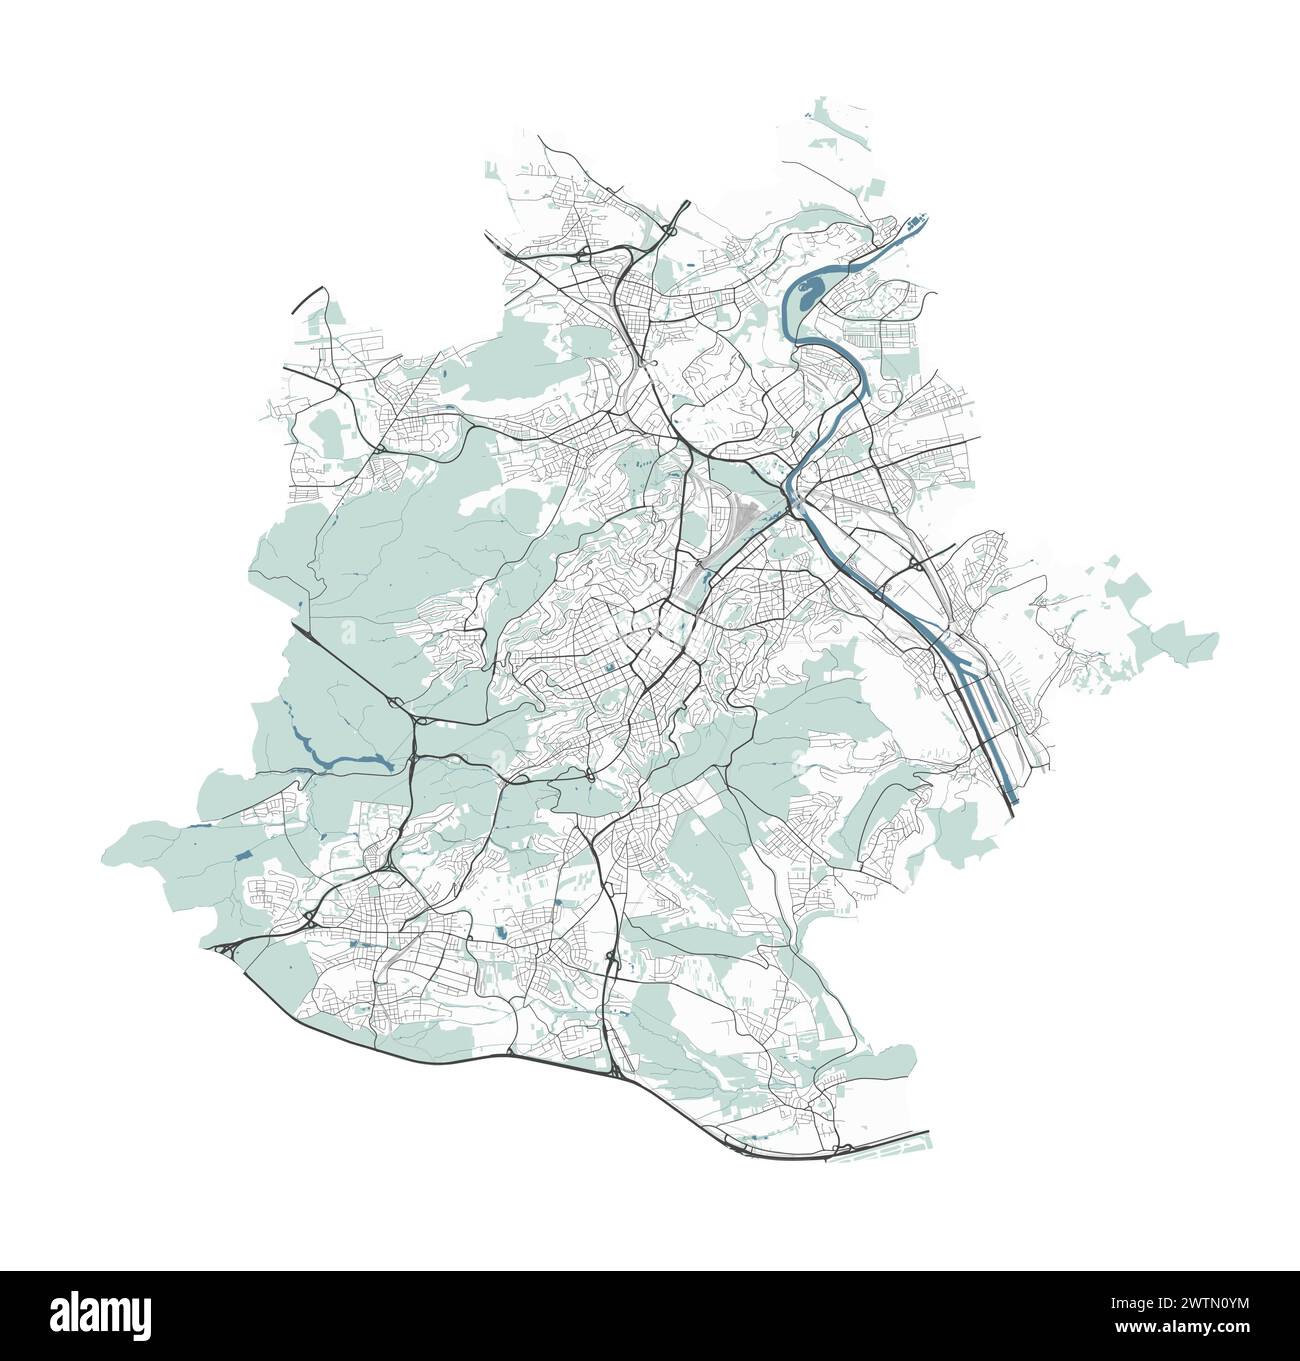 Karte von Stuttgart, Deutschland. Detaillierte Stadtvektorkarte, Metropolregion mit Grenze. Straßenkarte mit Straßen und Wasser. Stock Vektor